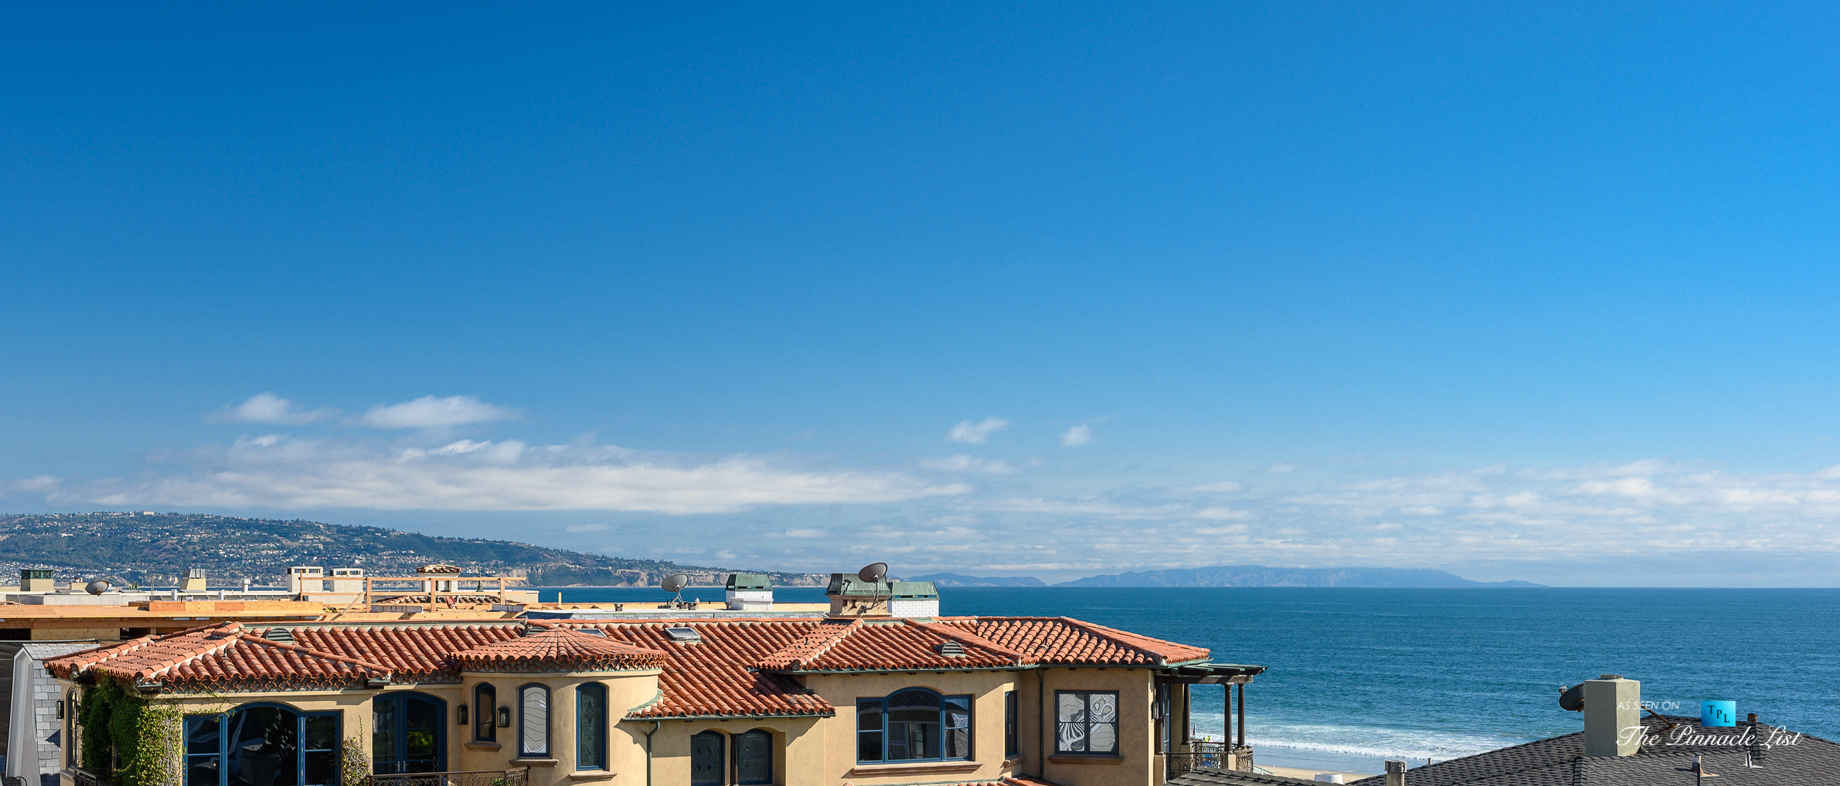 2016 Ocean Dr, Manhattan Beach, CA, USA - Ocean View - Luxury Real Estate - Modern Ocean View Home